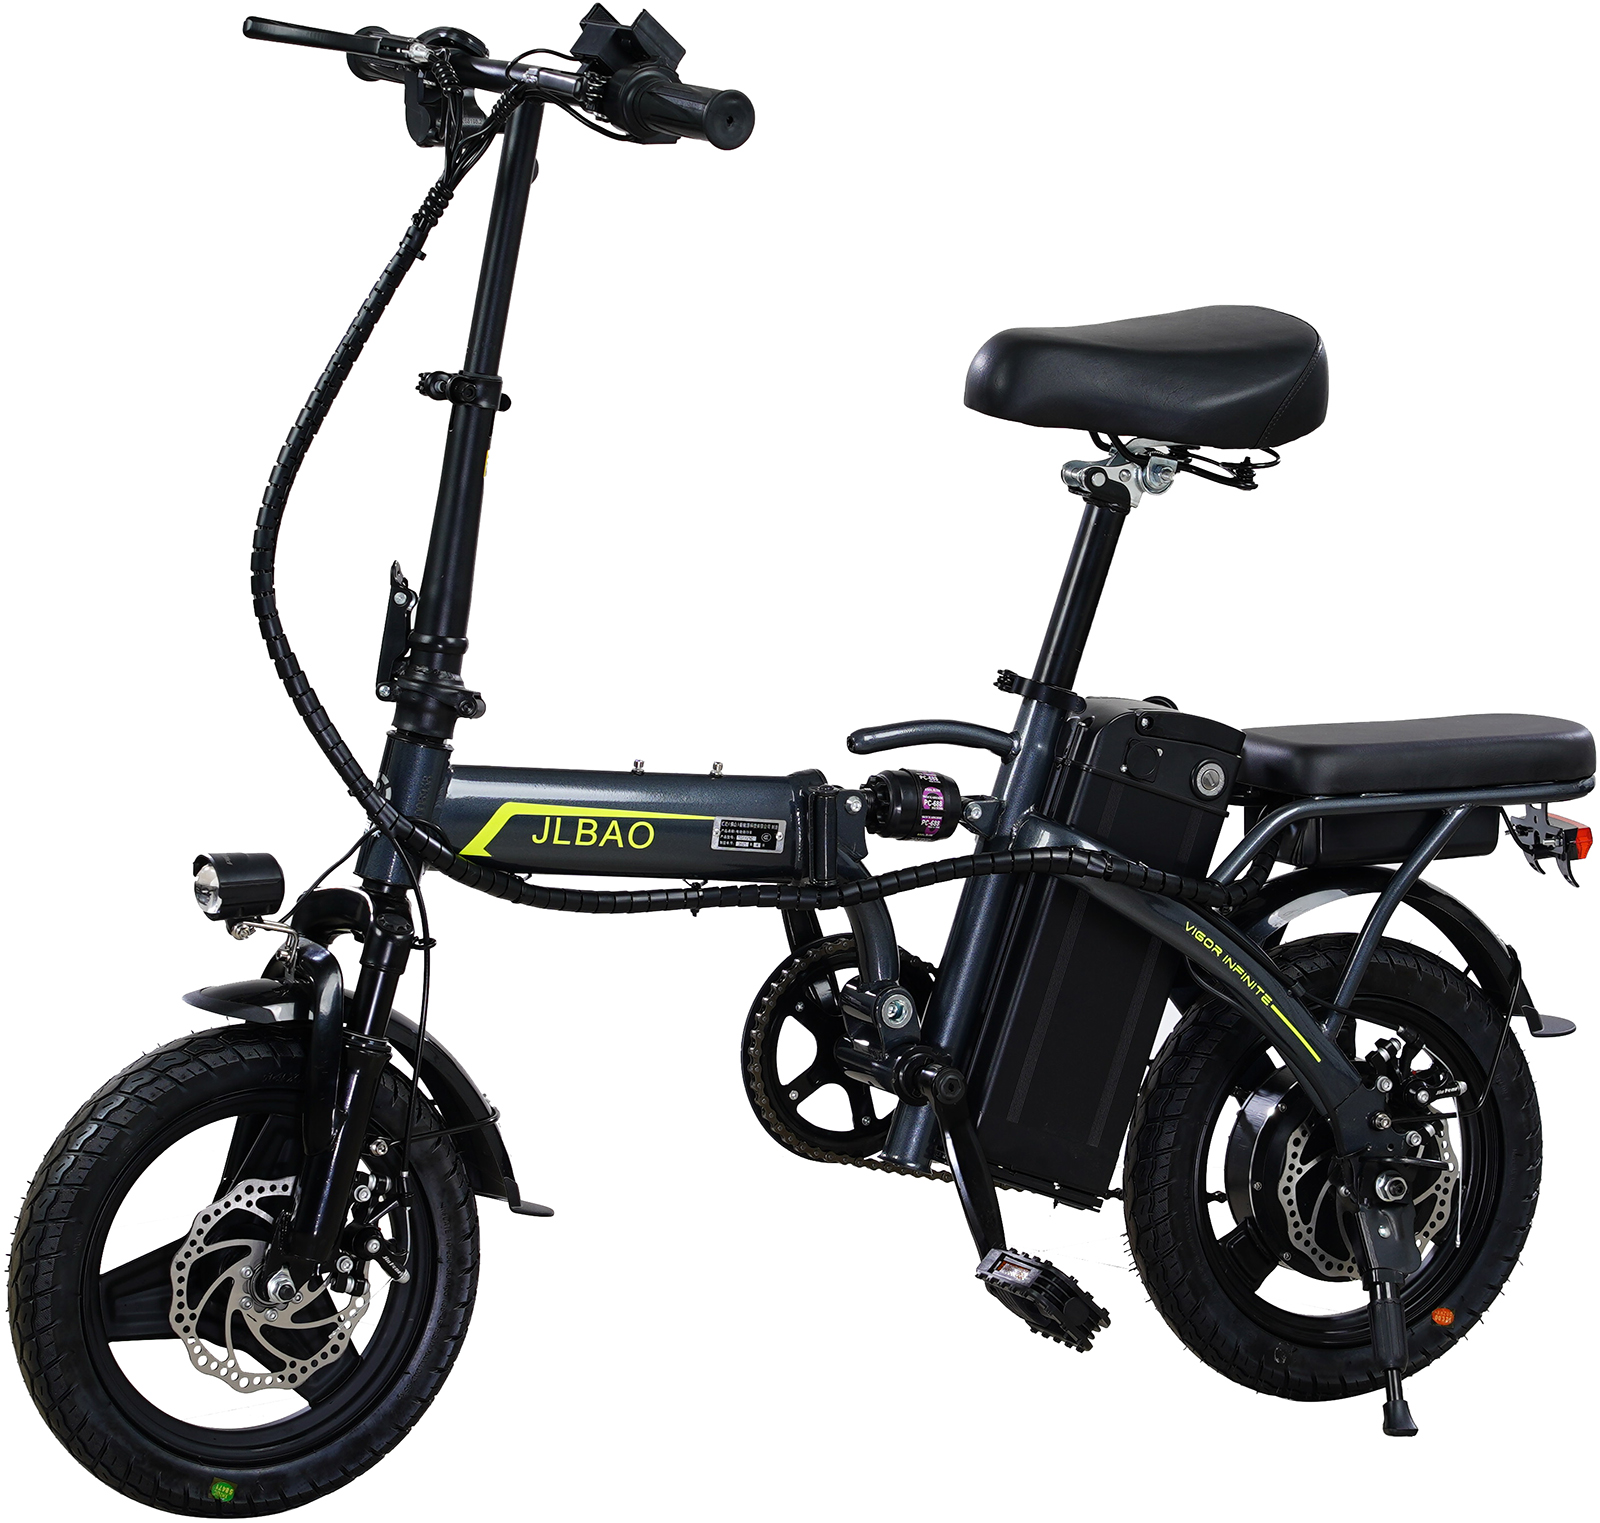 Xe đạp điện gấp Jlbao chạy được tốc độ tối đa bao nhiêu?